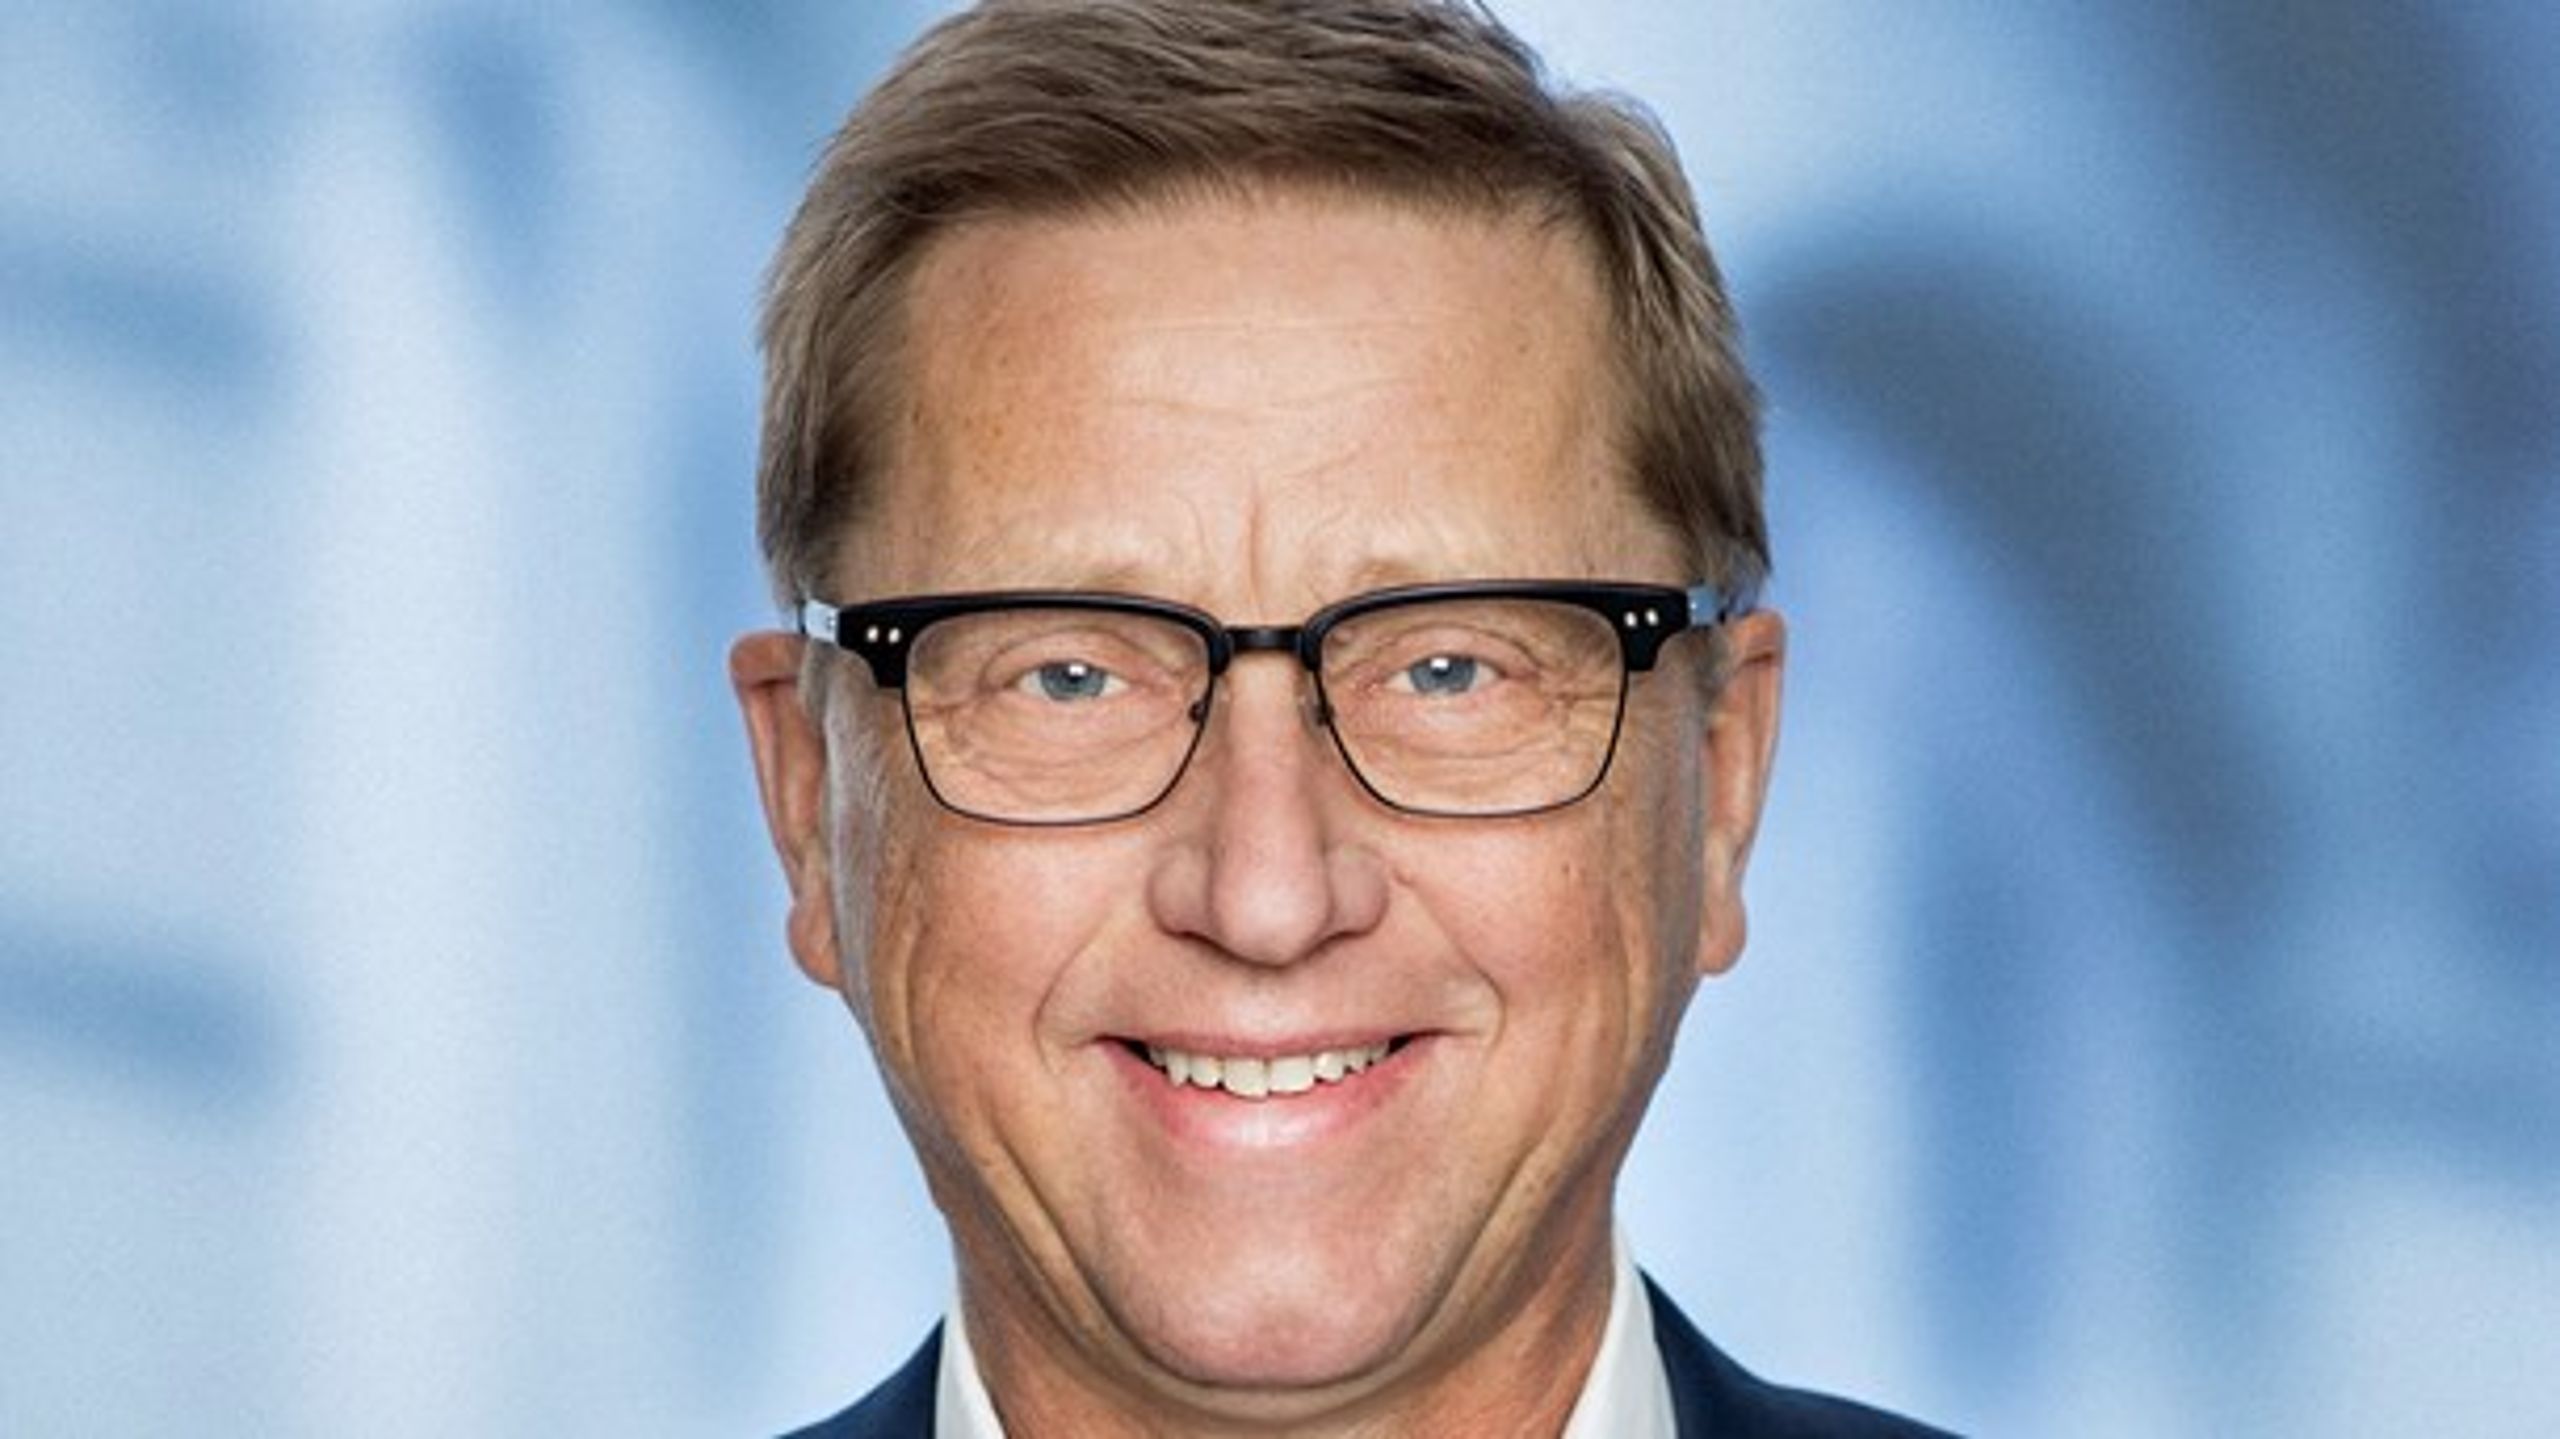 Asger Christensen blev valgt ind i Europa-Parlamentet for Venstre i maj 2019.